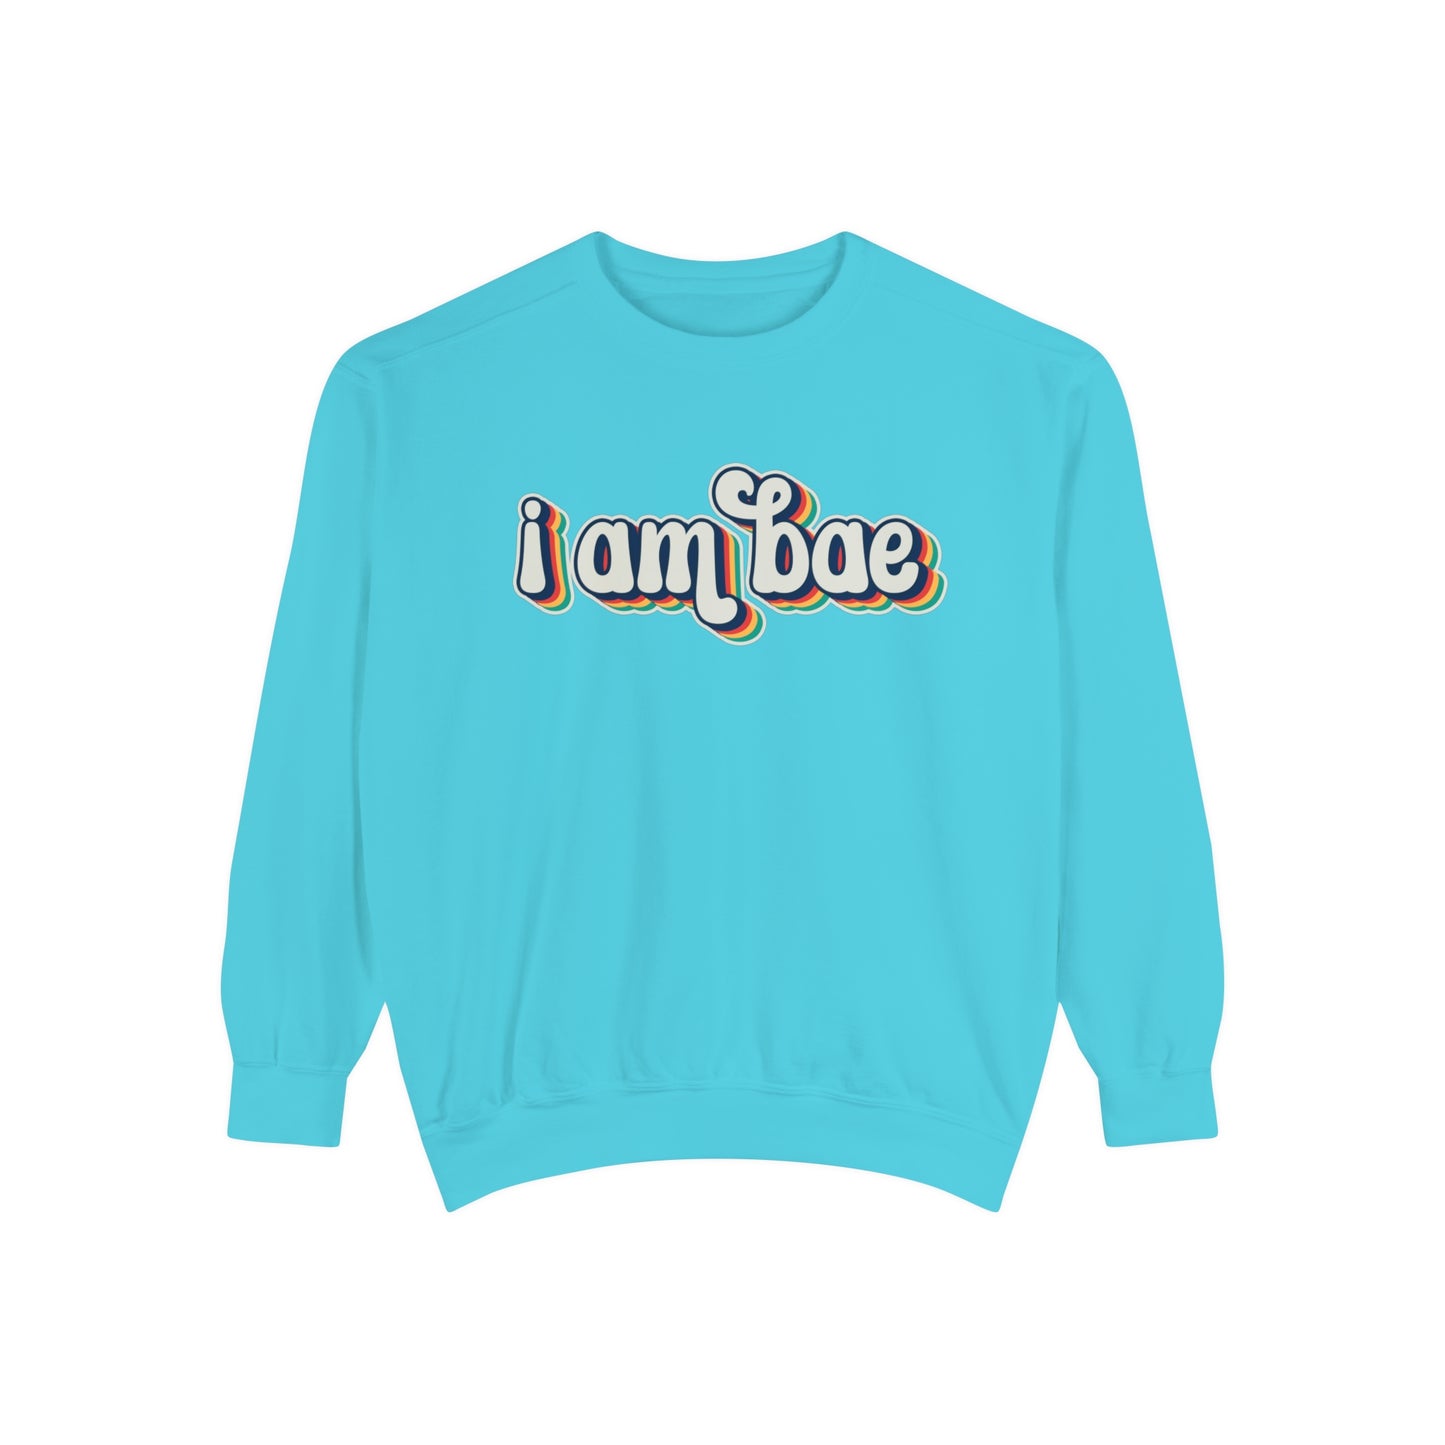 I Am Bae Sweatshirt